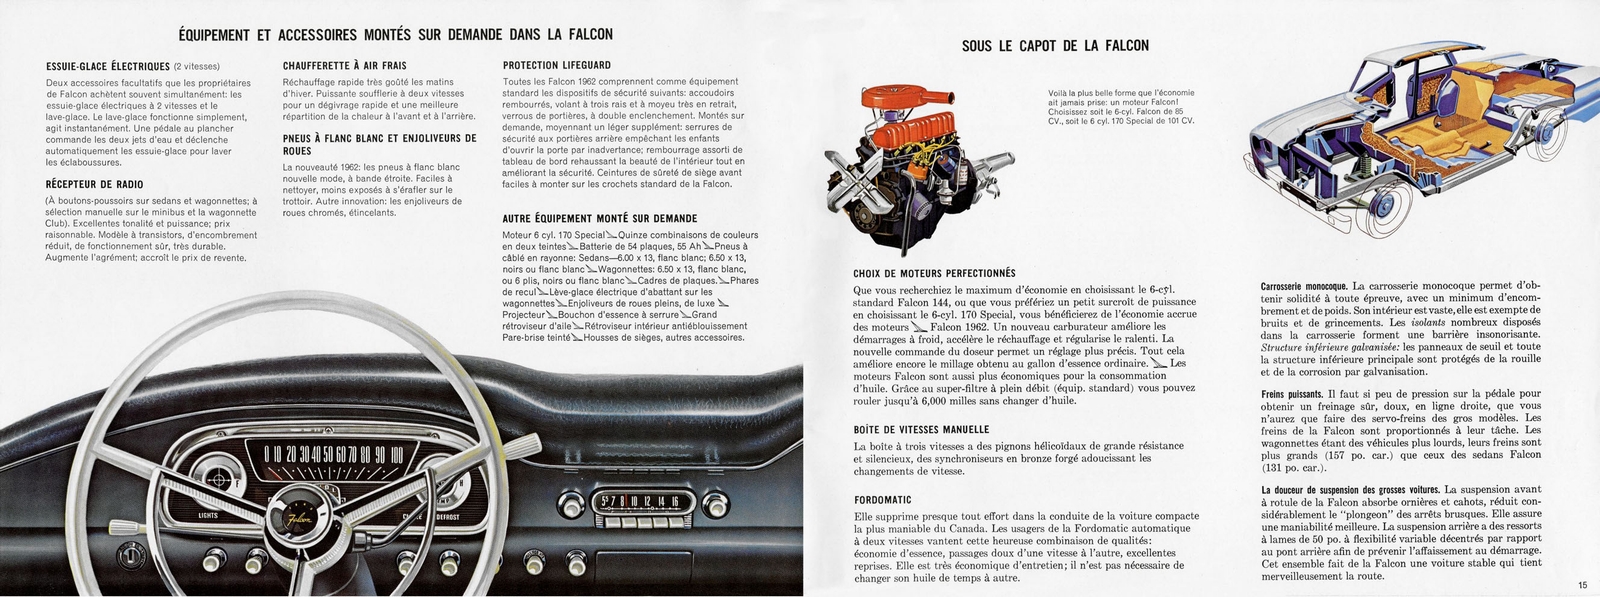 n_1962 Ford Falcon (Cdn-Fr)-14-15 - Copy.jpg